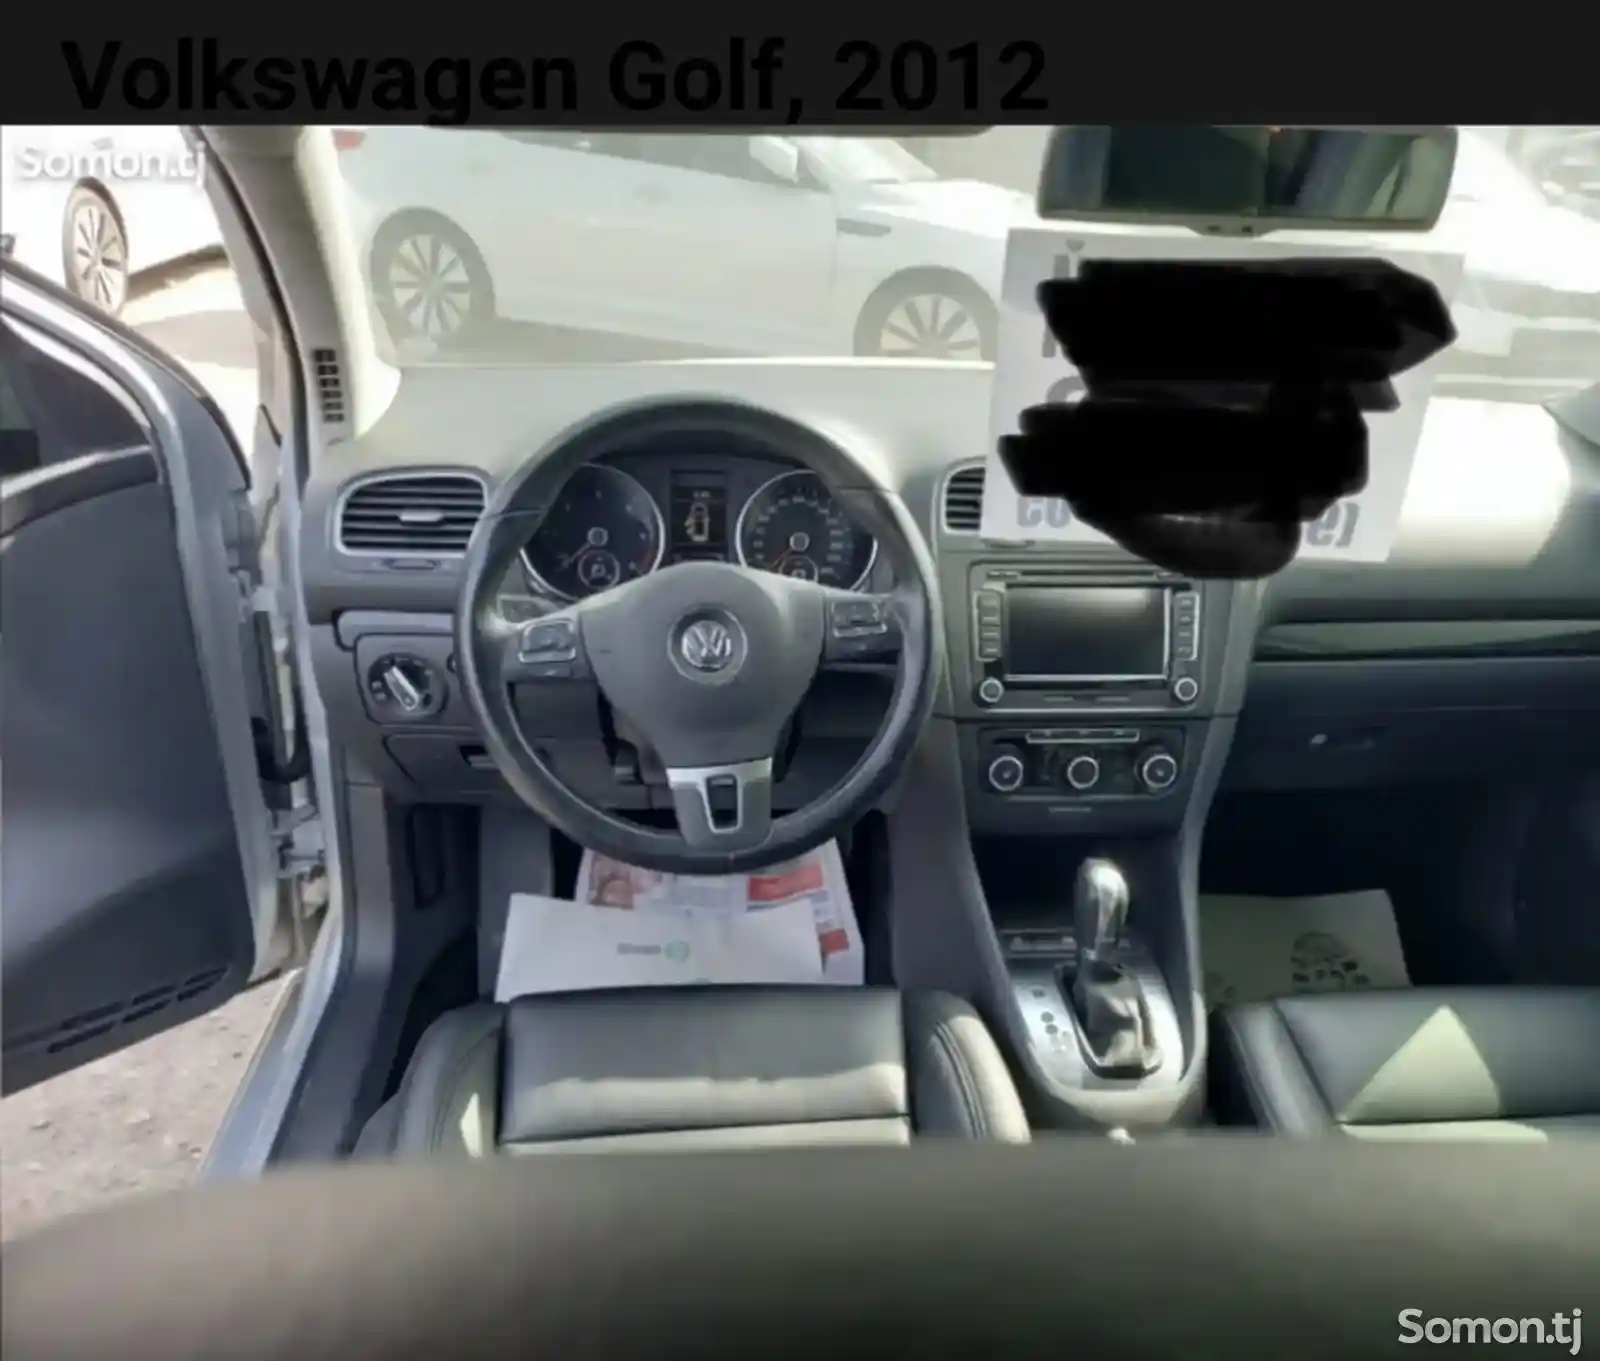 Volkswagen Golf, 2012-1